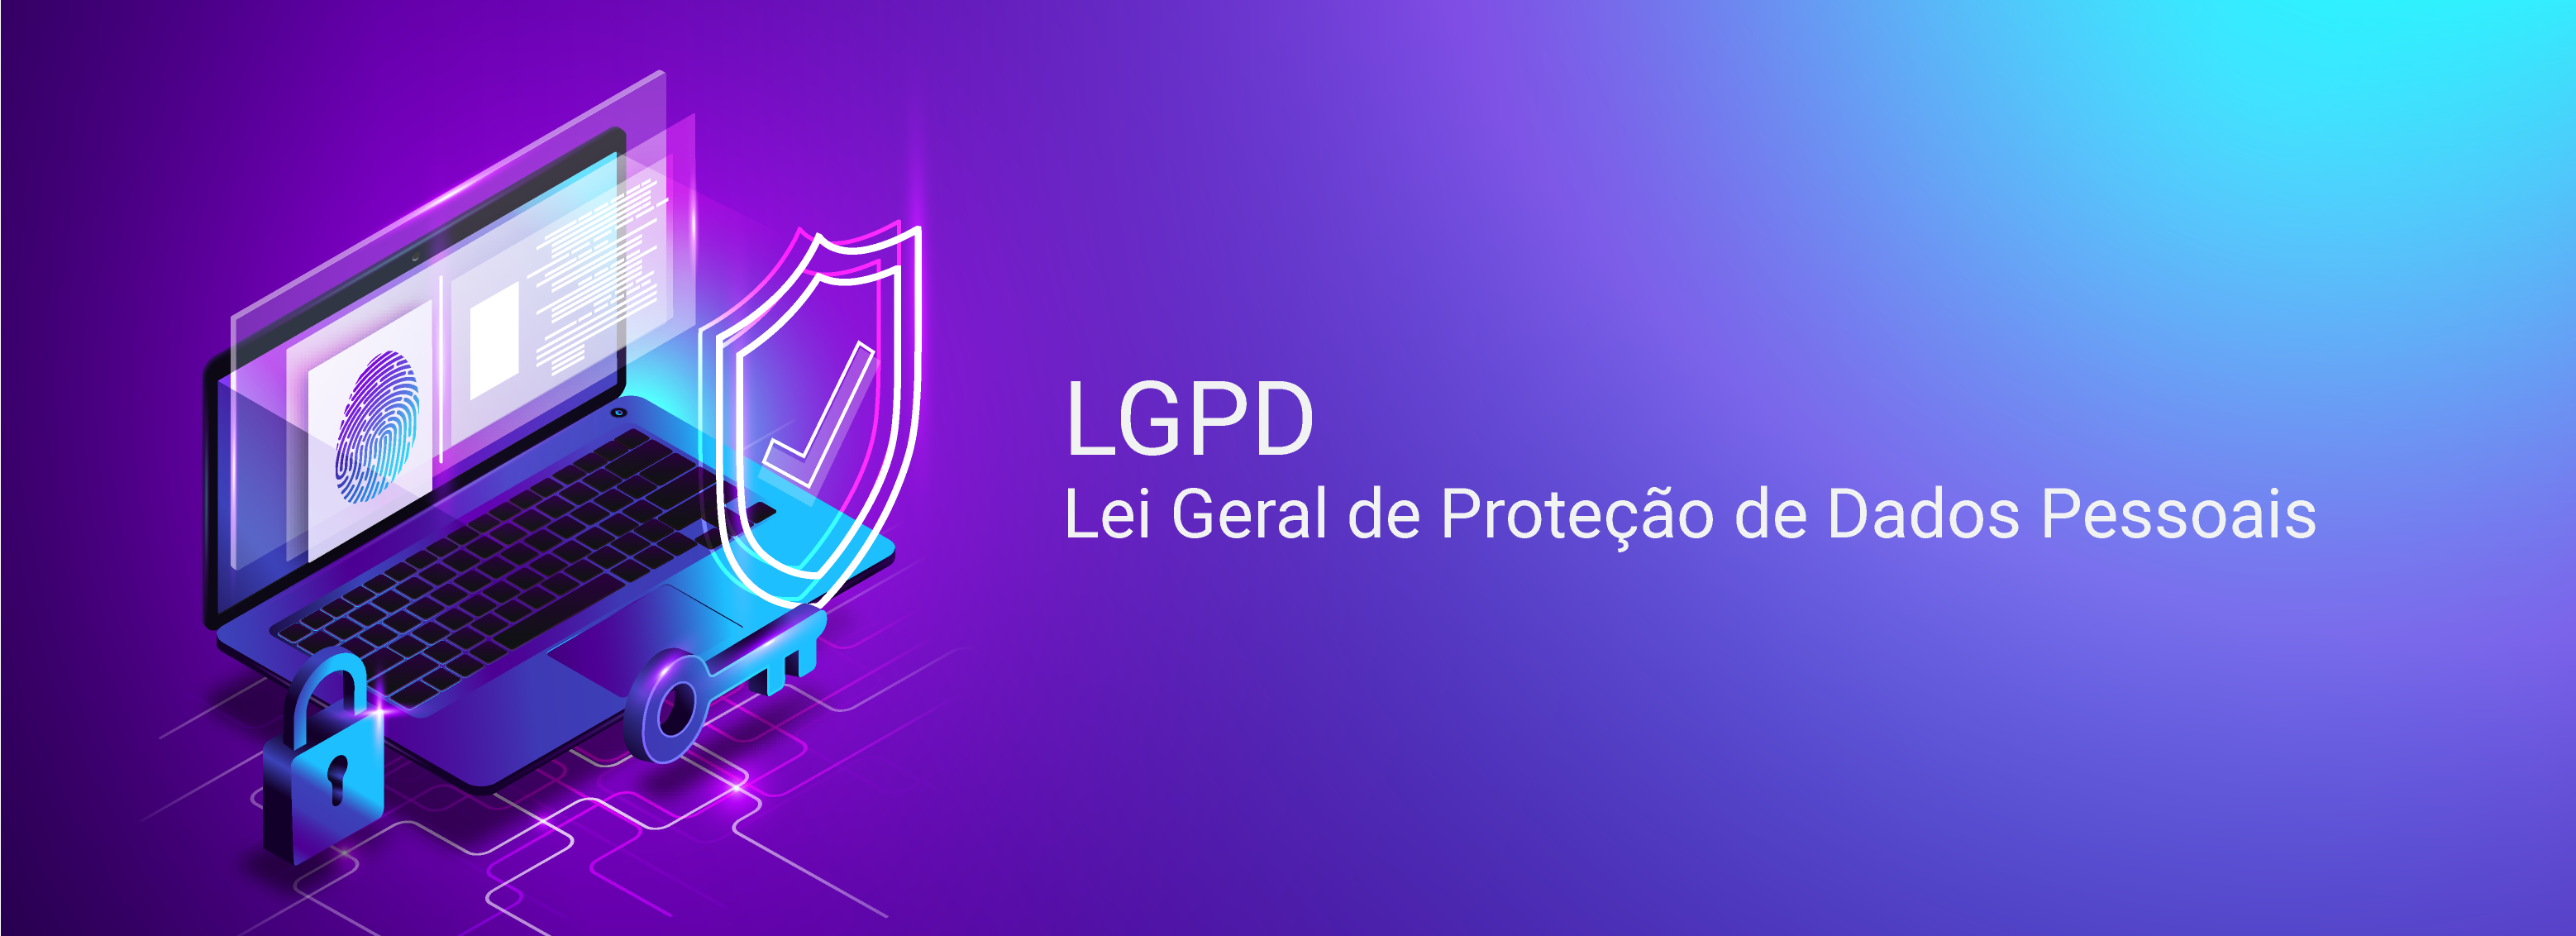 Live LGPD - Um conceito - Várias visões